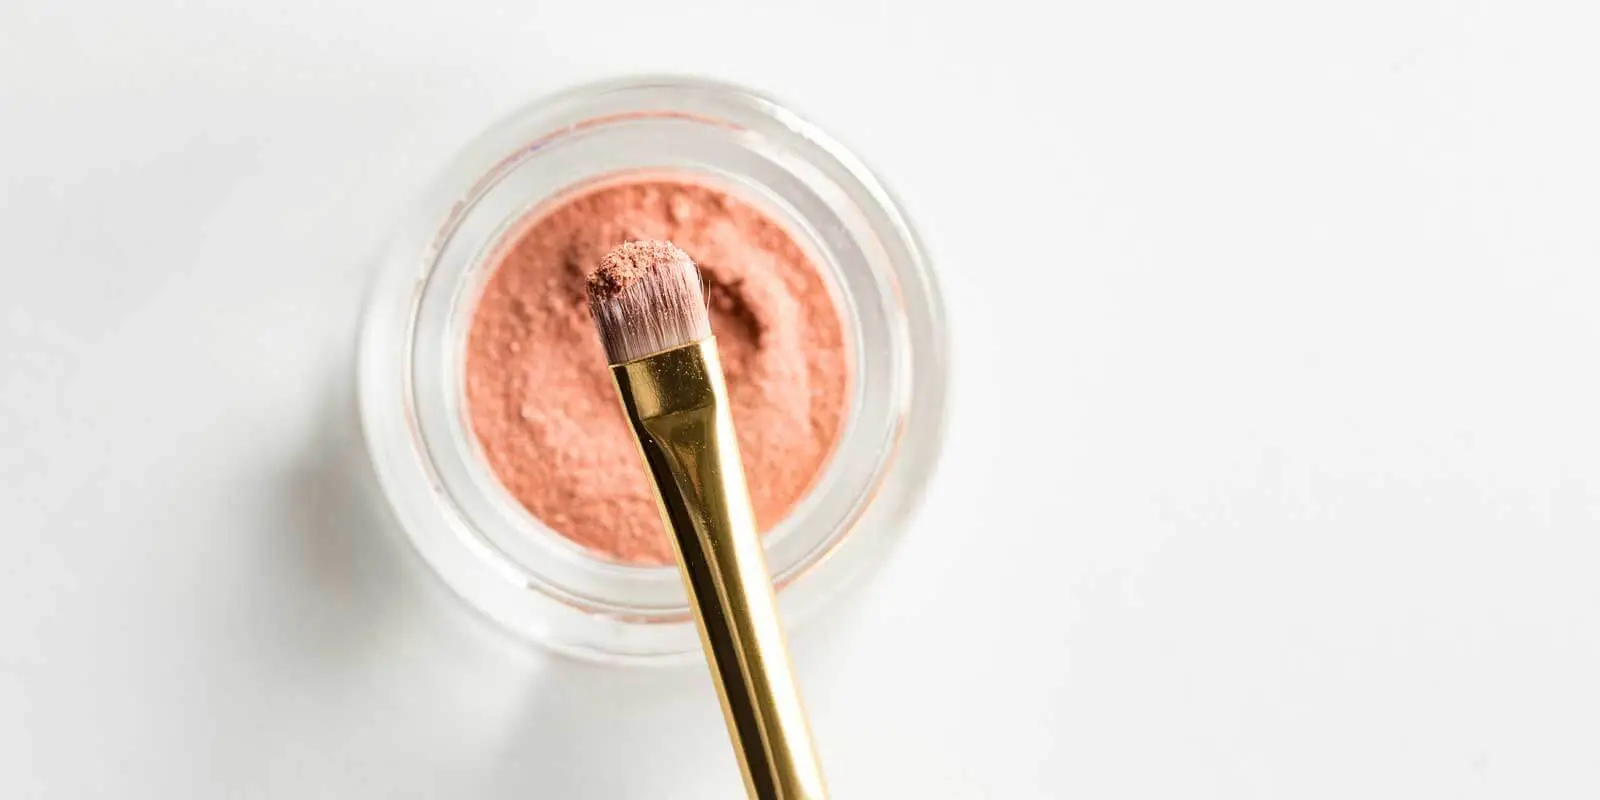 Closeup of a powdery makeup and makeup brush